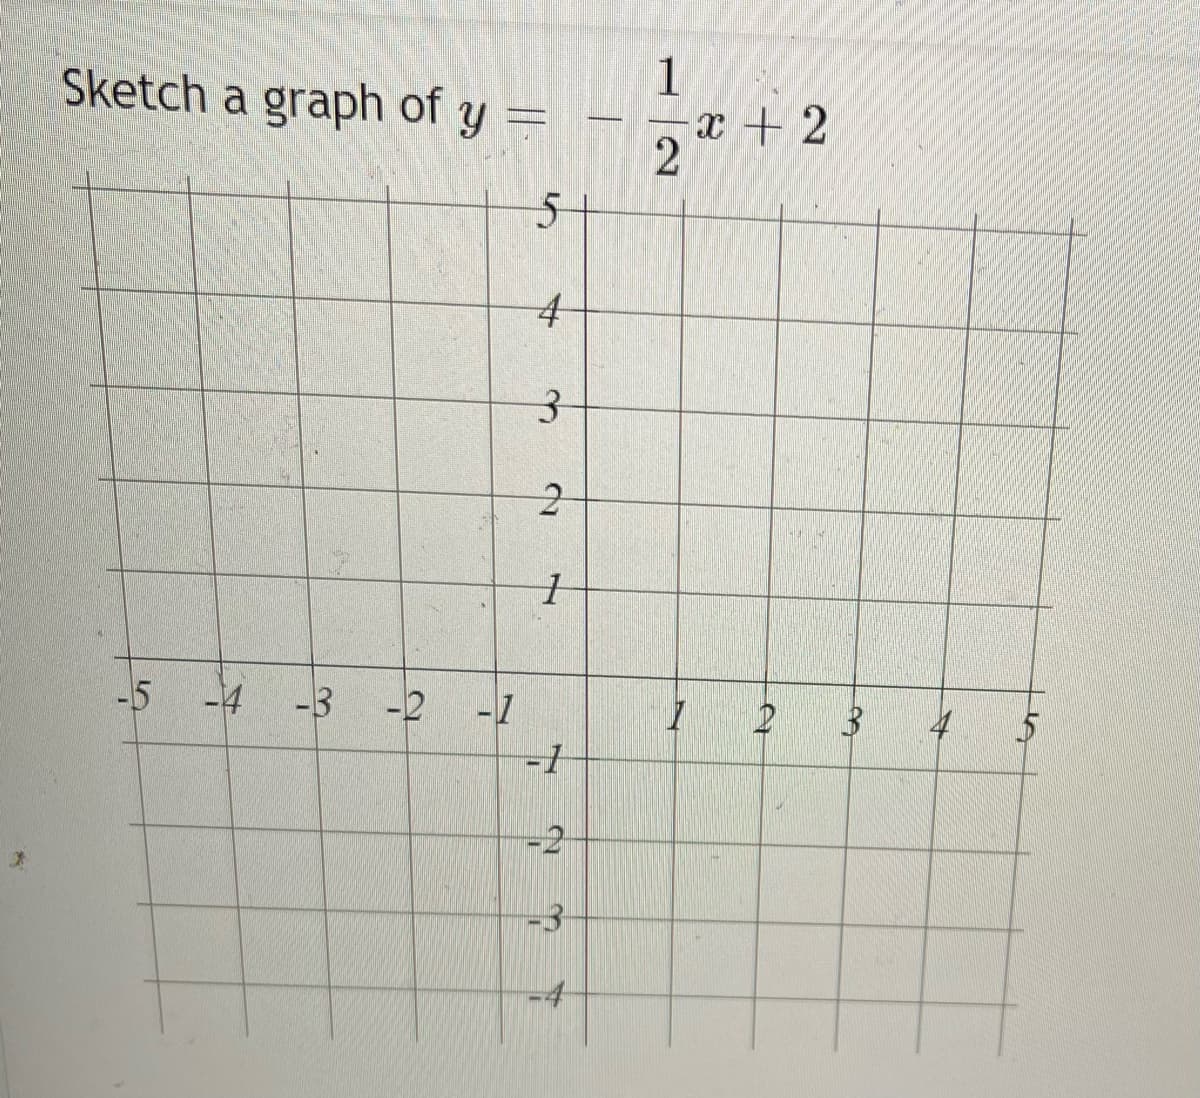 Sketch a graph of y
1
x + 2
-5
-4
-3
-2
-1
-2
-3
-4
%24
